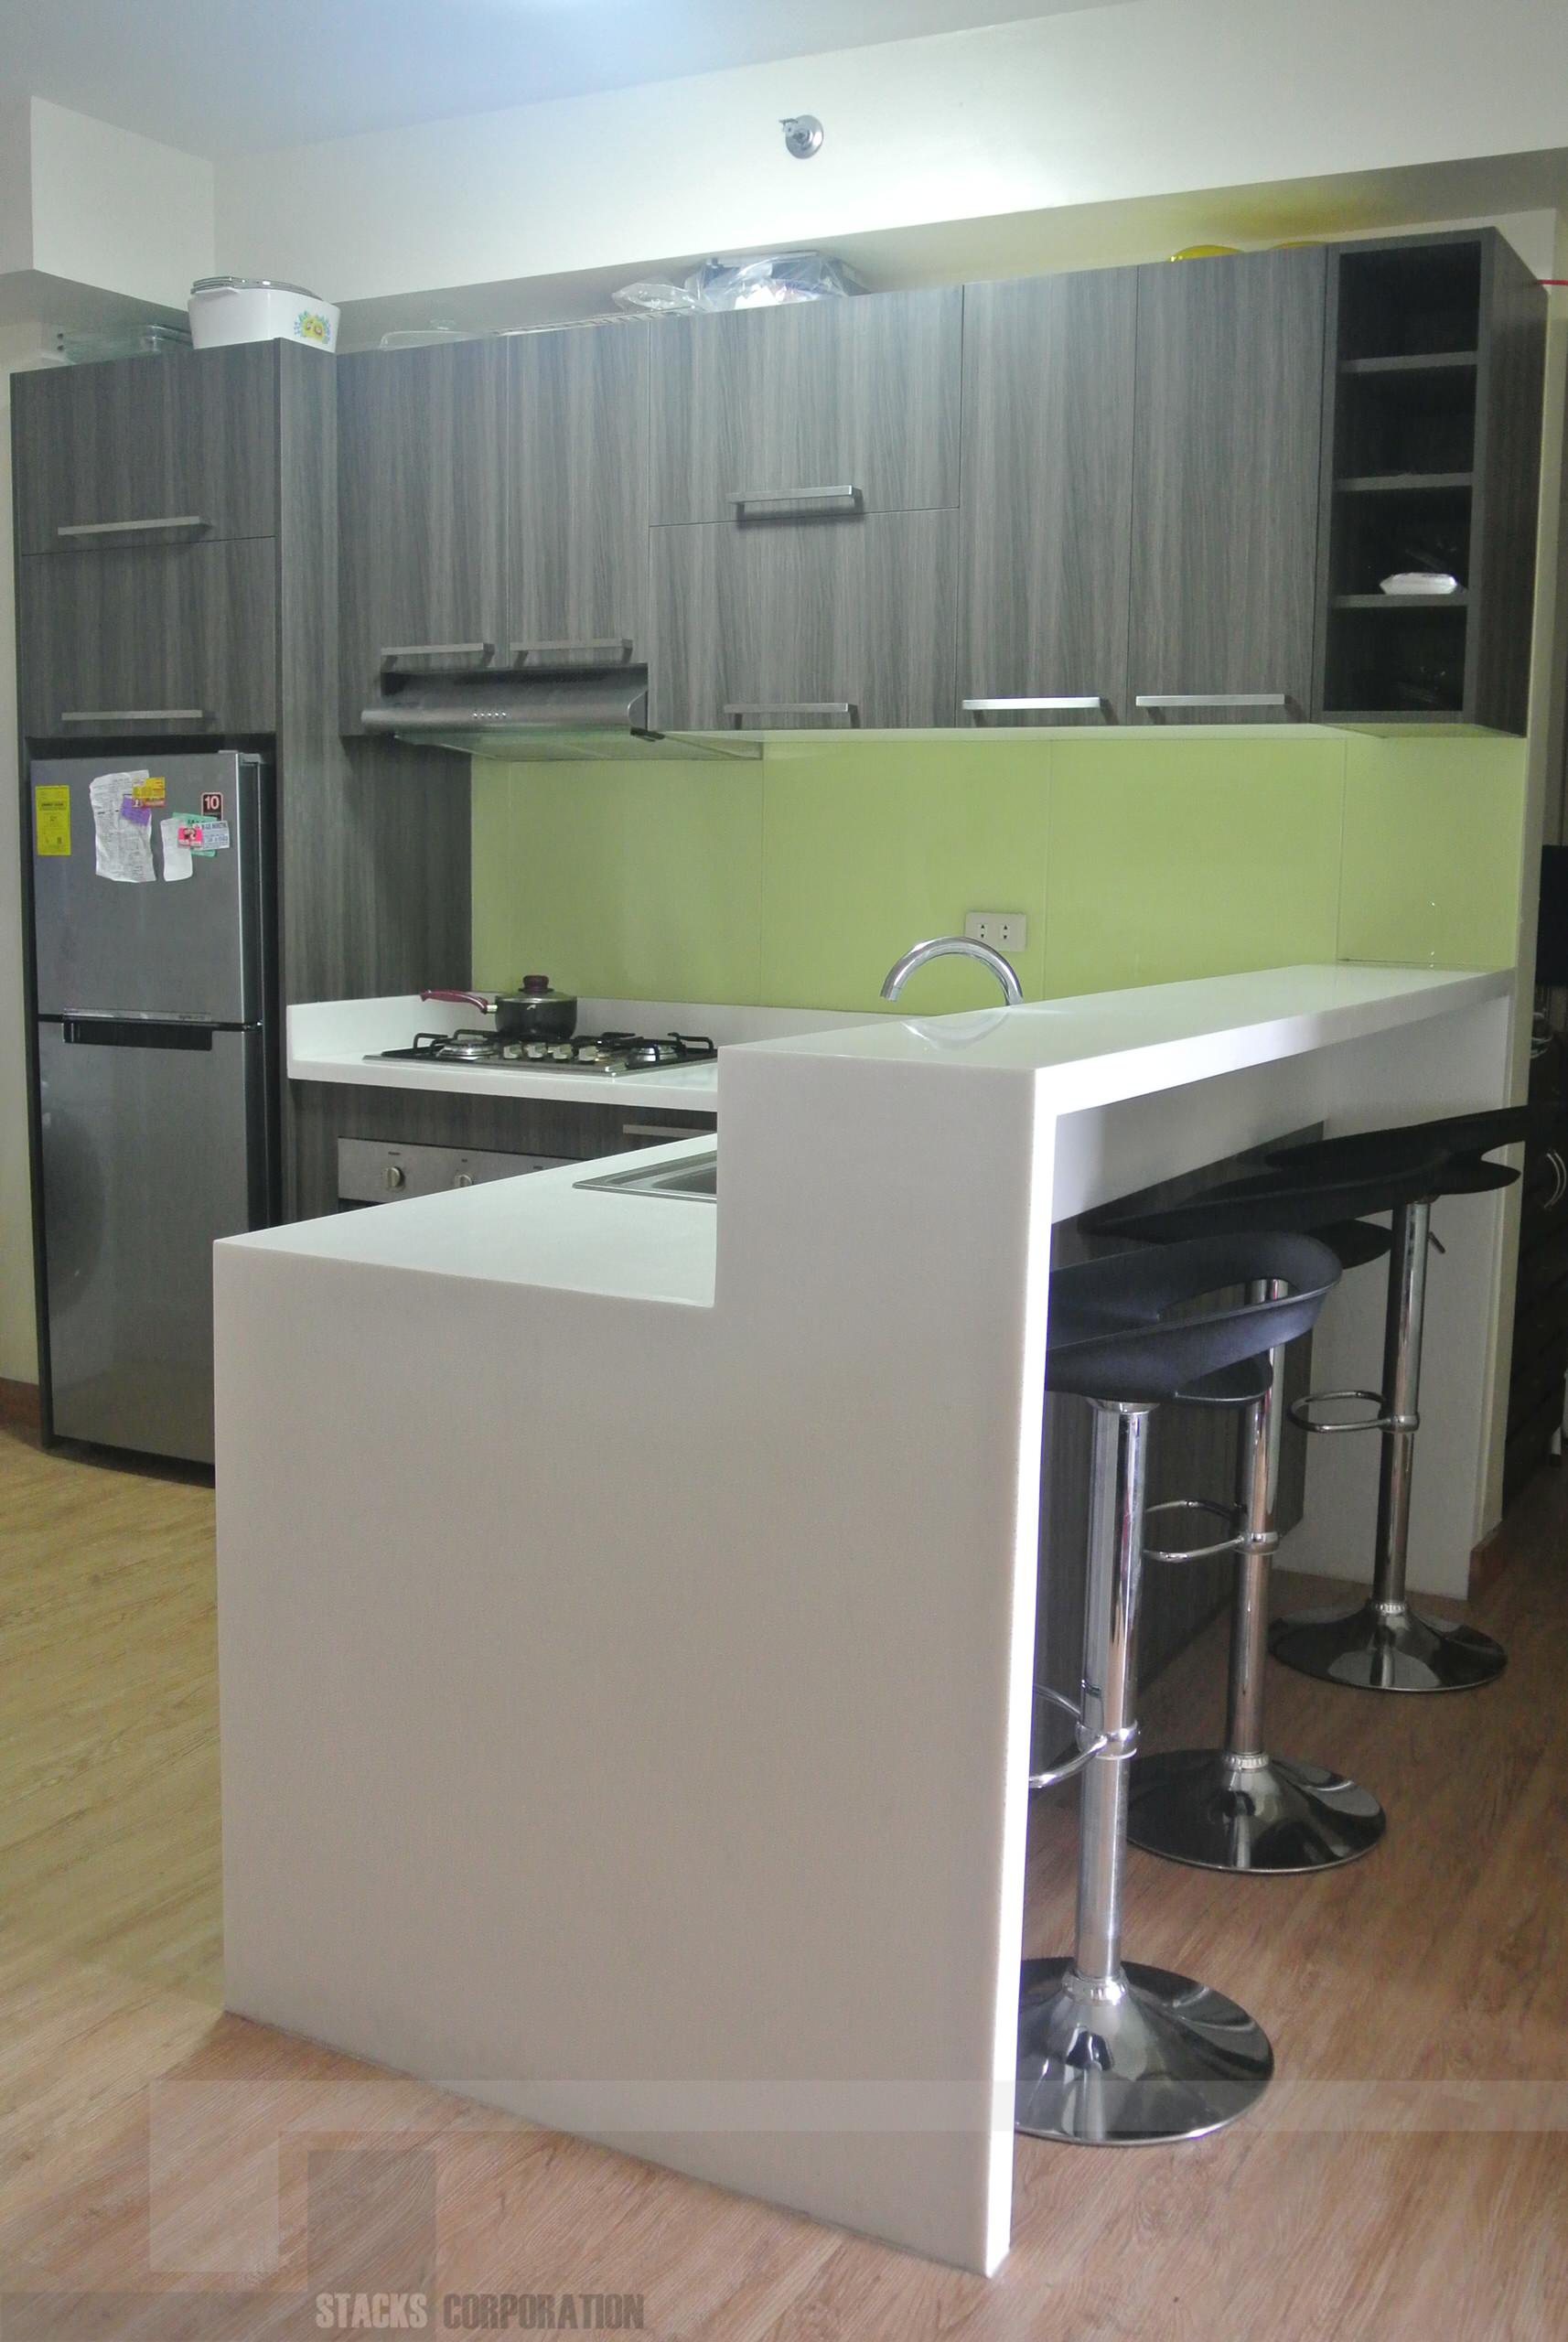 Modular Kitchen Cabinets In Sta Mesa, Modern Kitchen Design In The Philippines